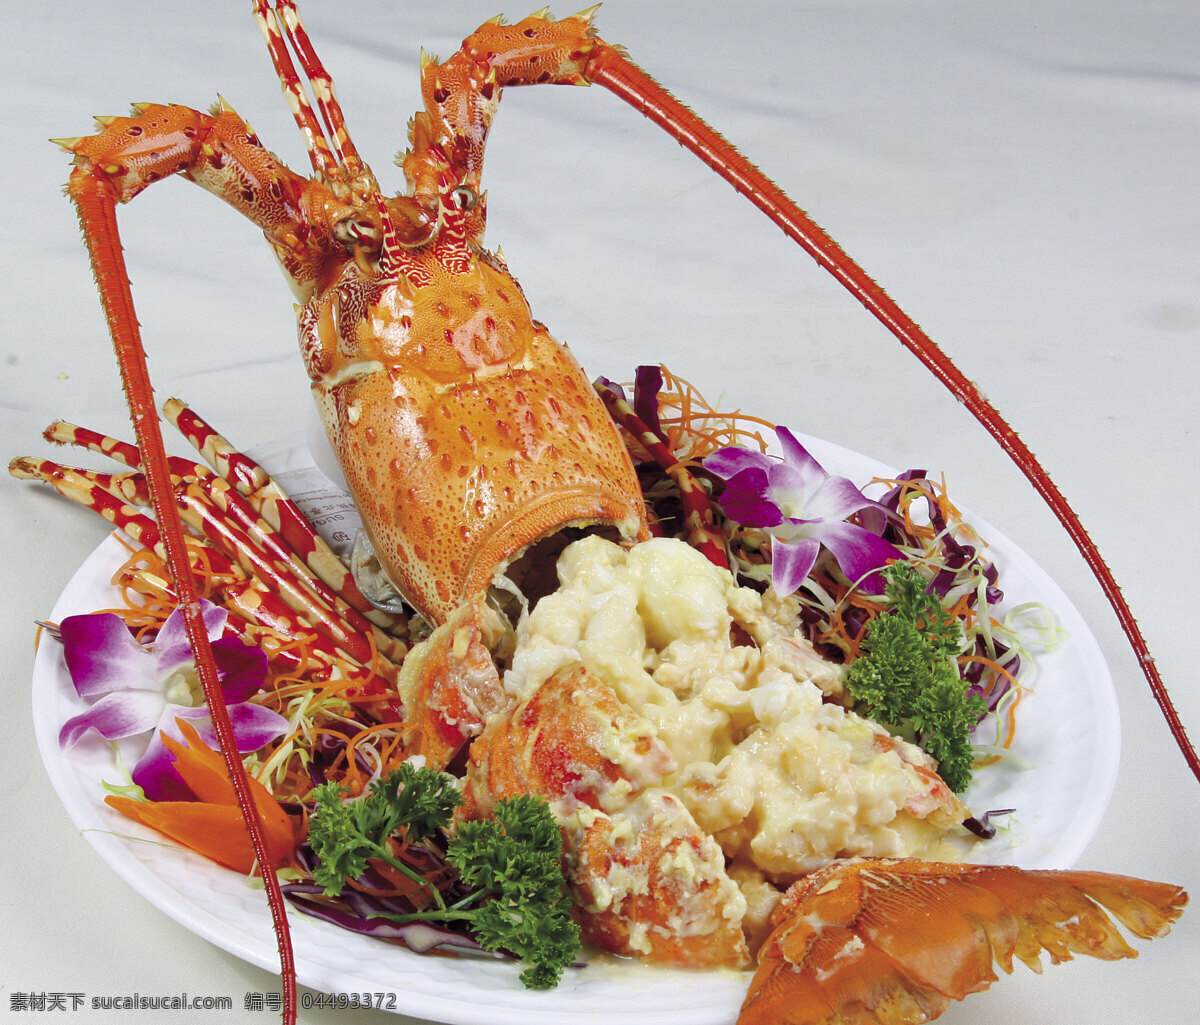 大龙虾 芝士焗龙虾 西餐 餐饮美食 西餐美食 摄影图库